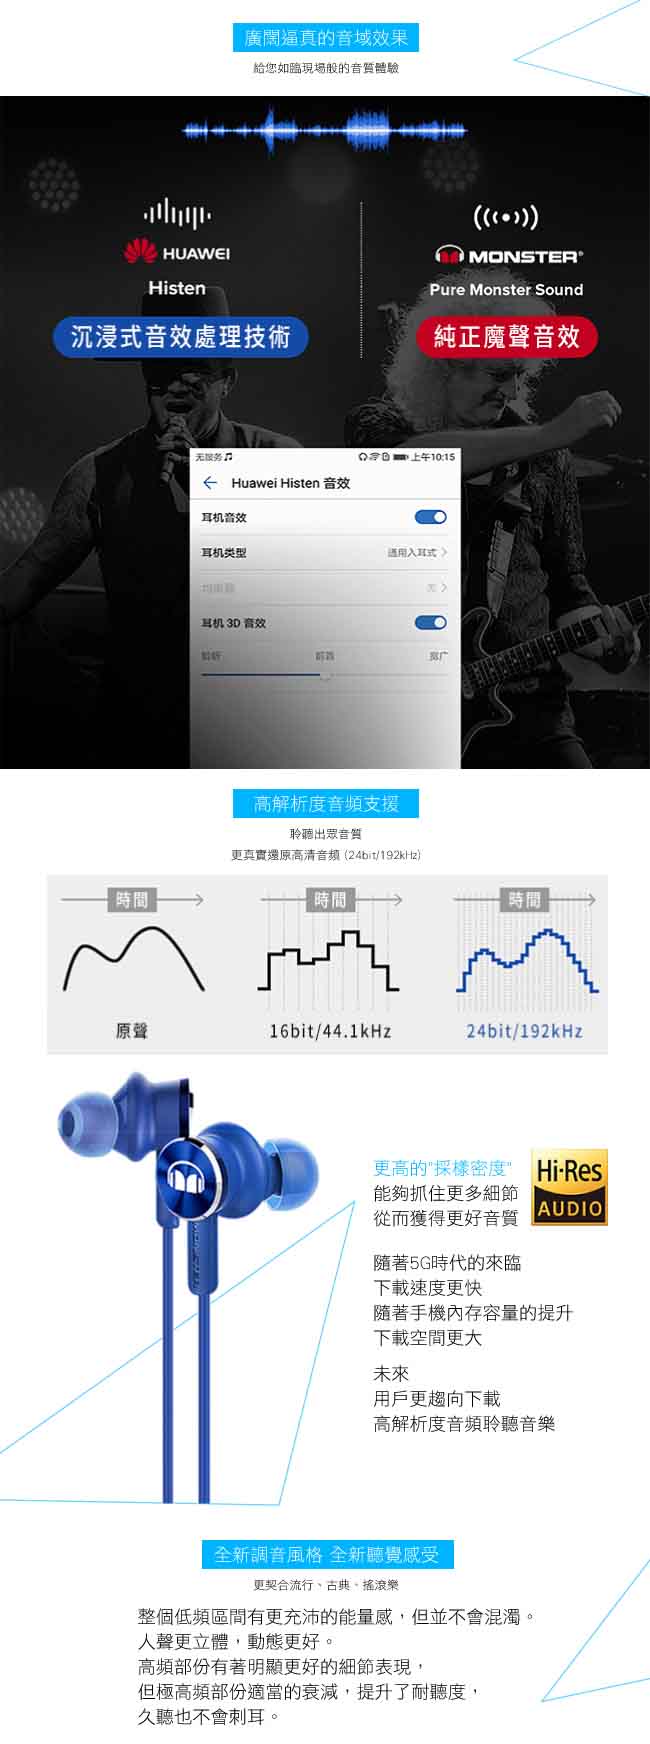 榮耀honor x 魔聲MONSTER 第二代 原廠入耳式耳機 (台灣公司貨)